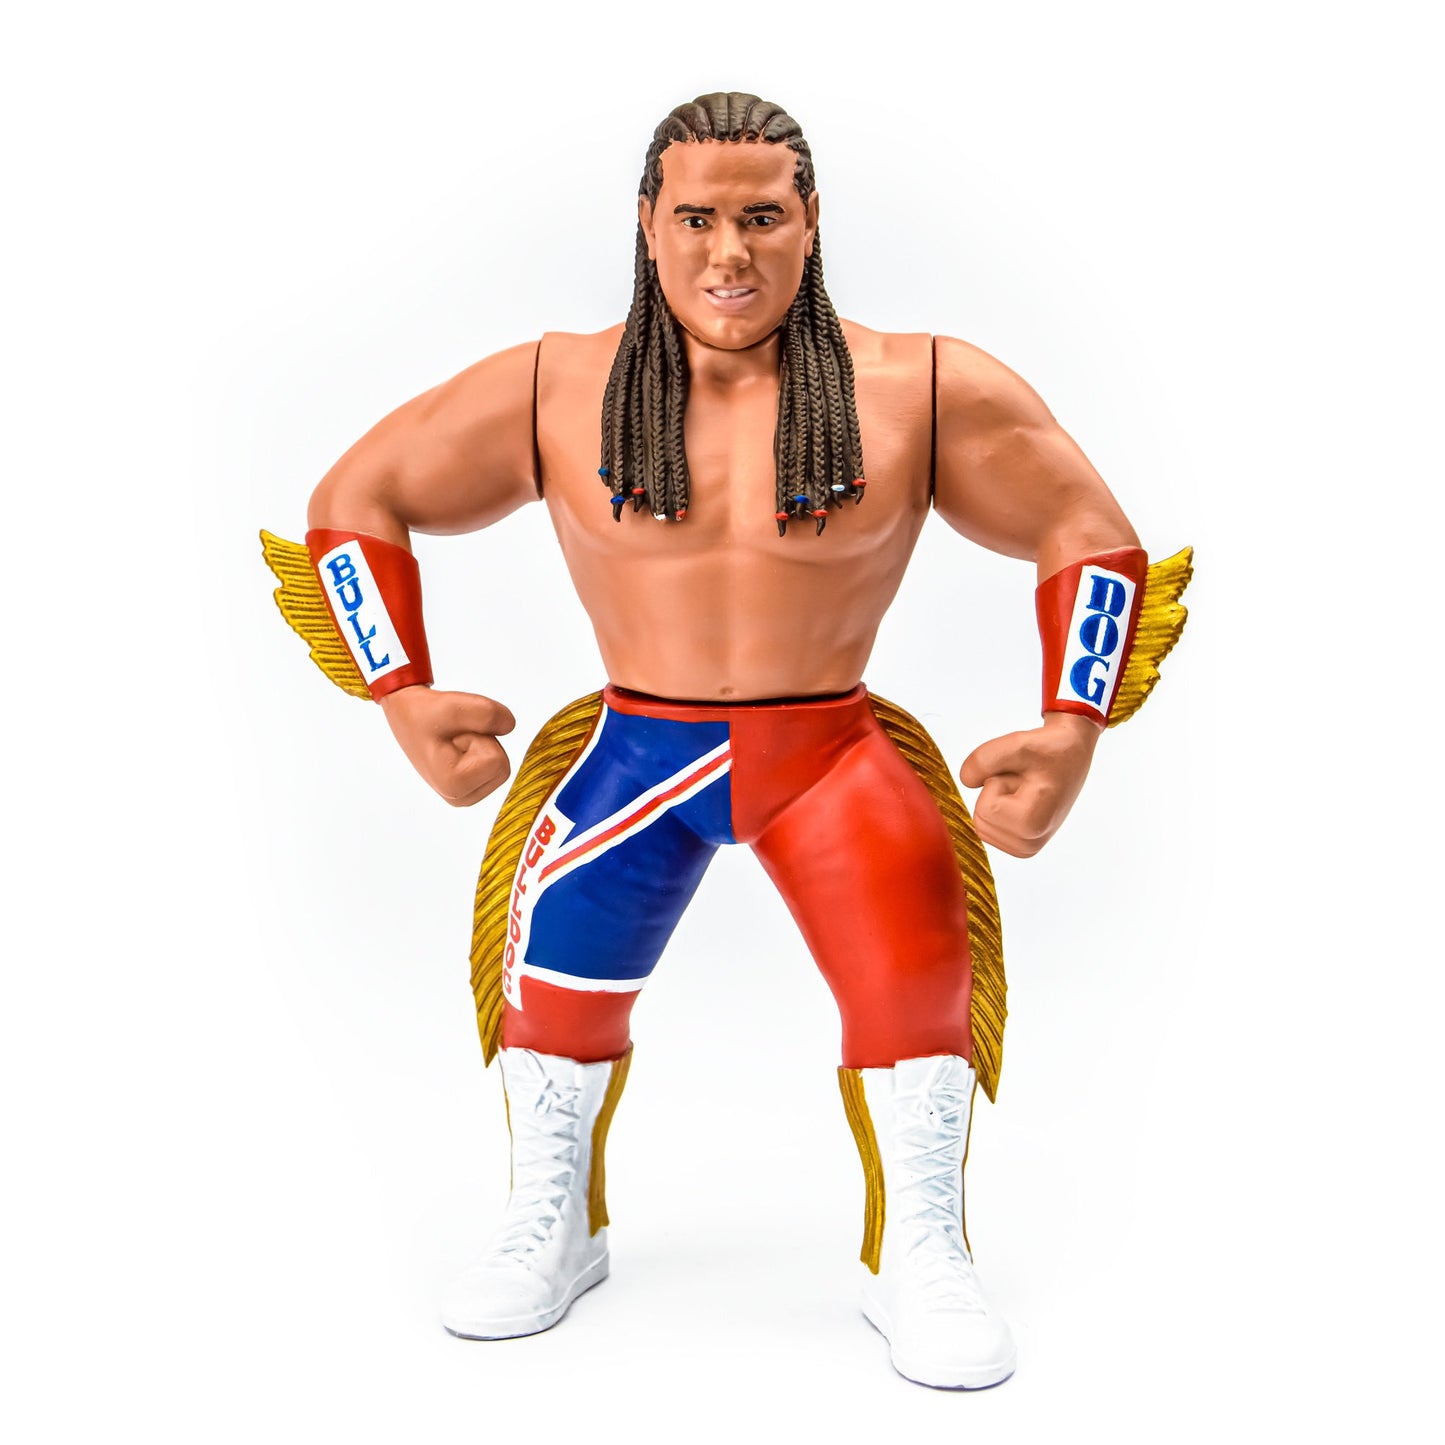 Chella Toys Wrestling Megastars 3 “The British Bulldog” Davey Boy Smith [1993 Edition]